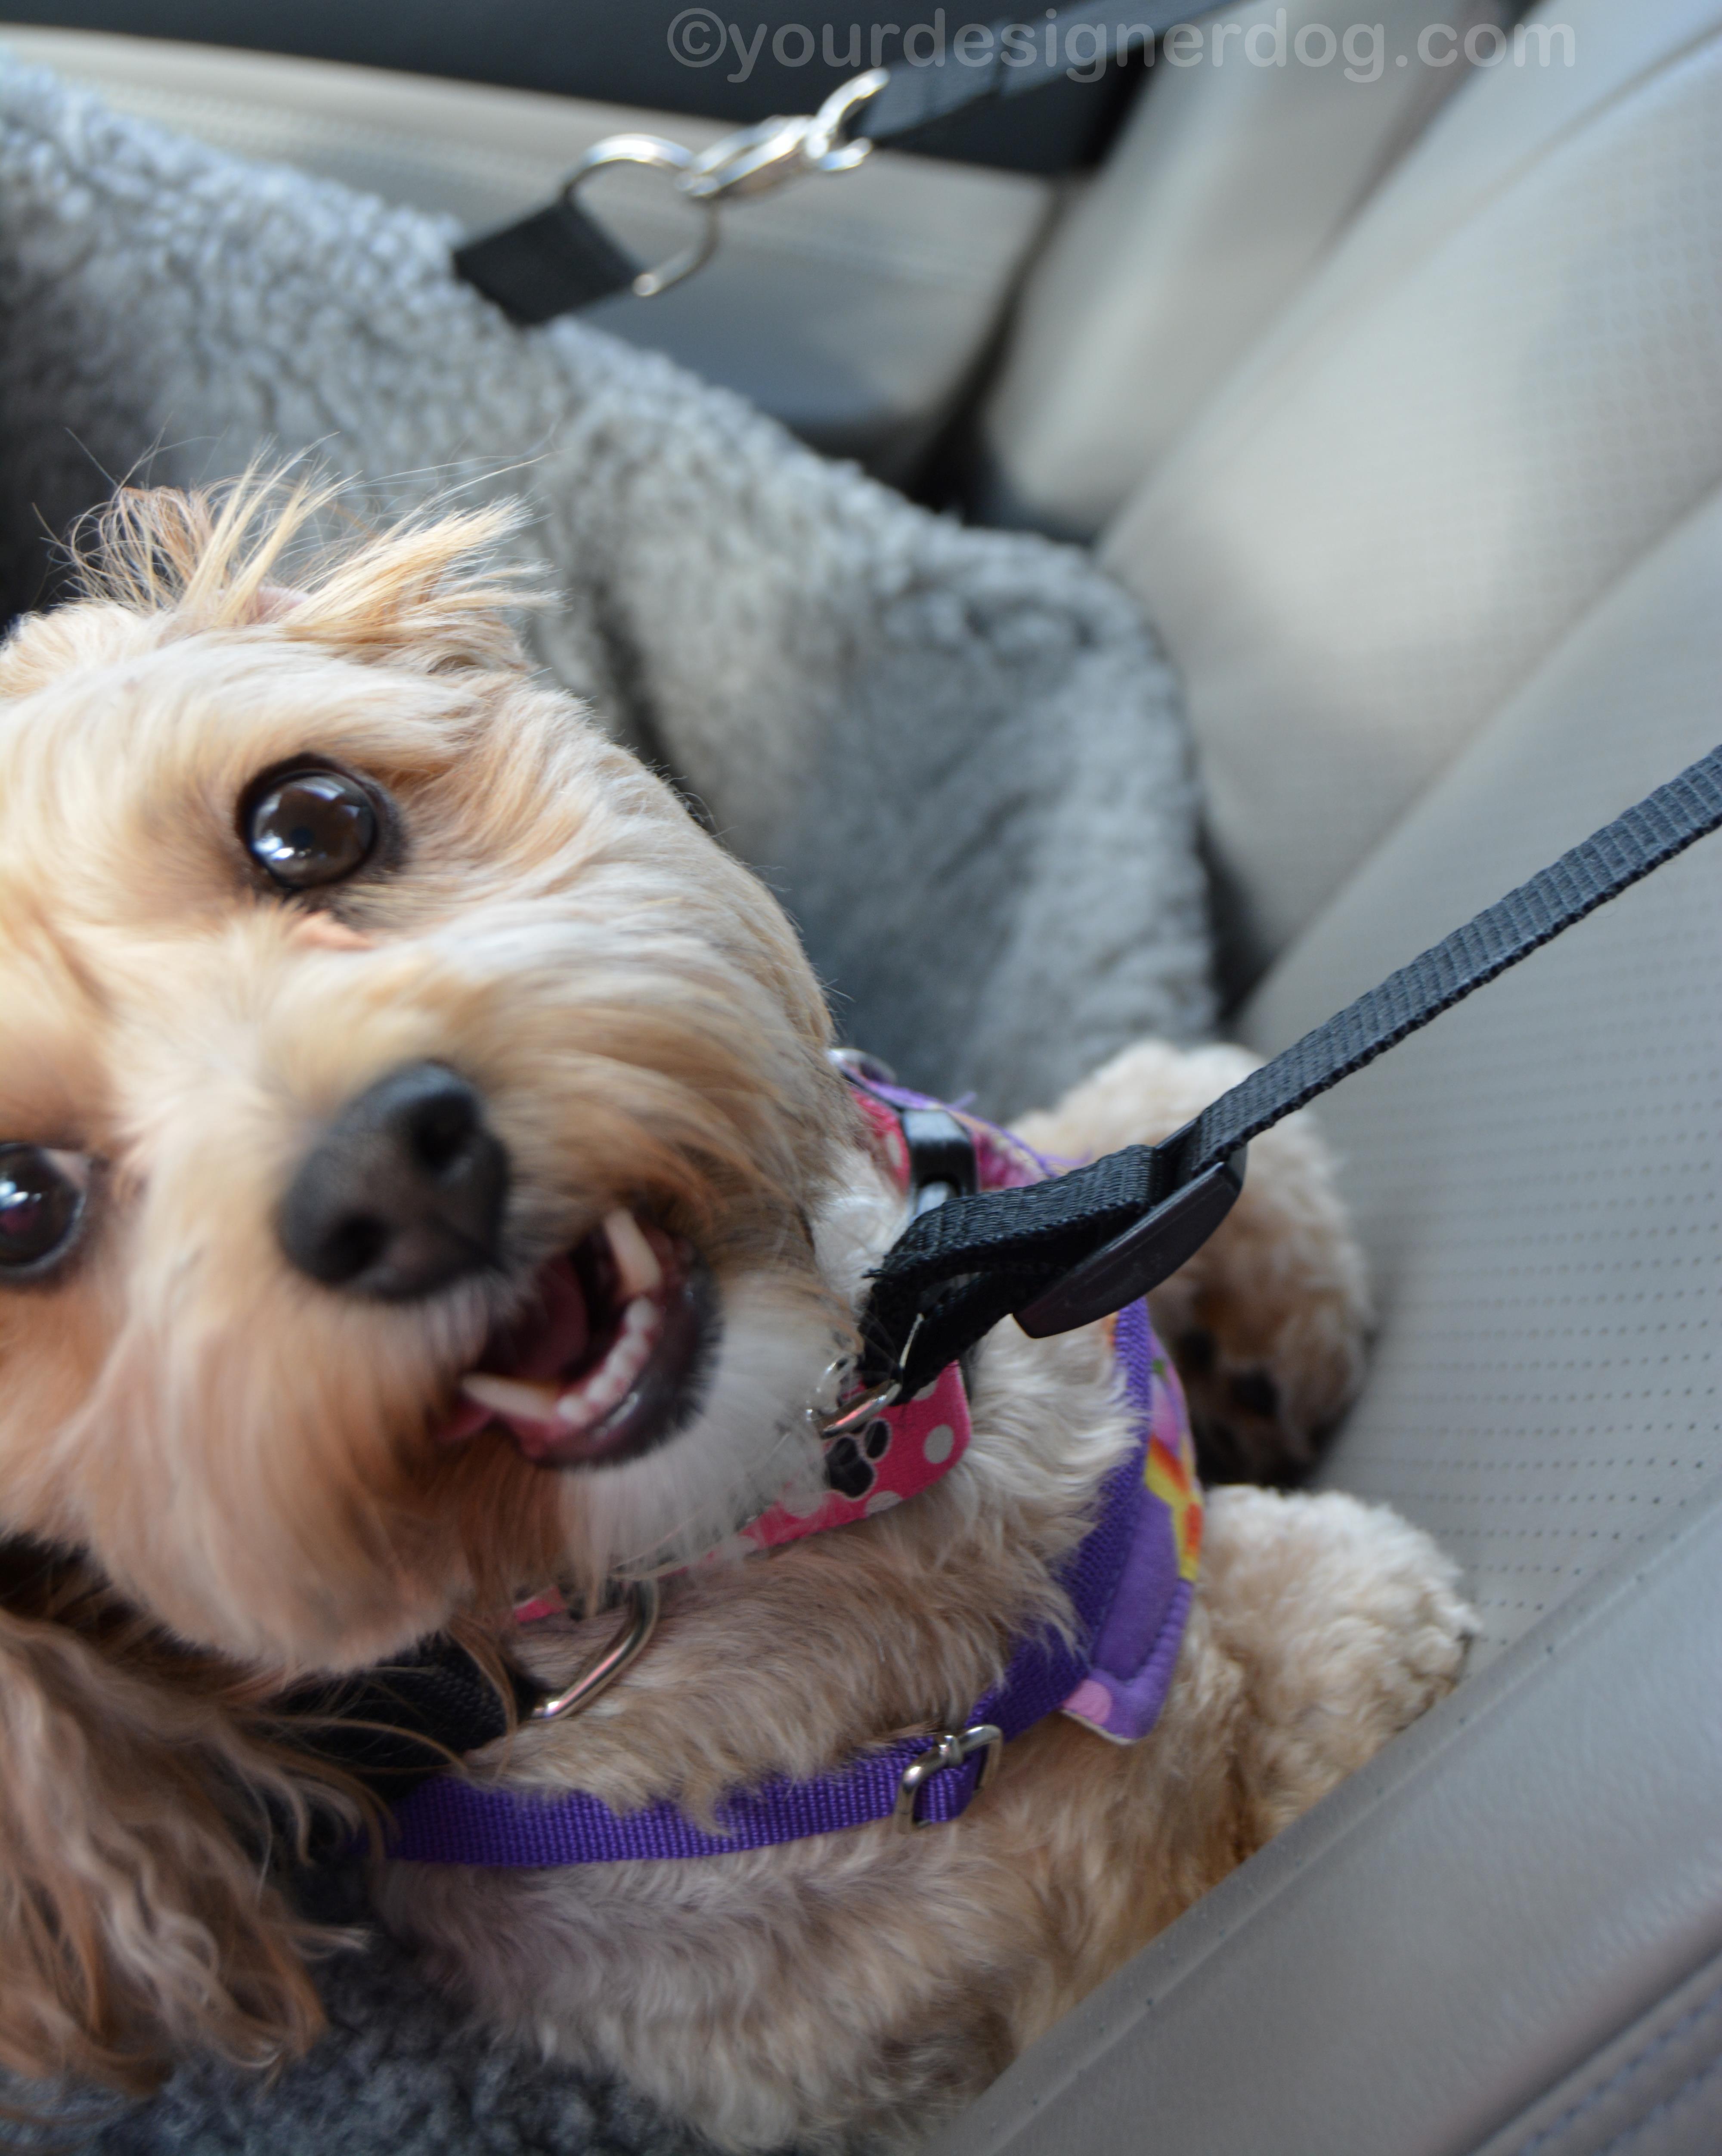 dogs, designer dogs, yorkipoo, yorkie poo, blooper, car seat, dog smiling